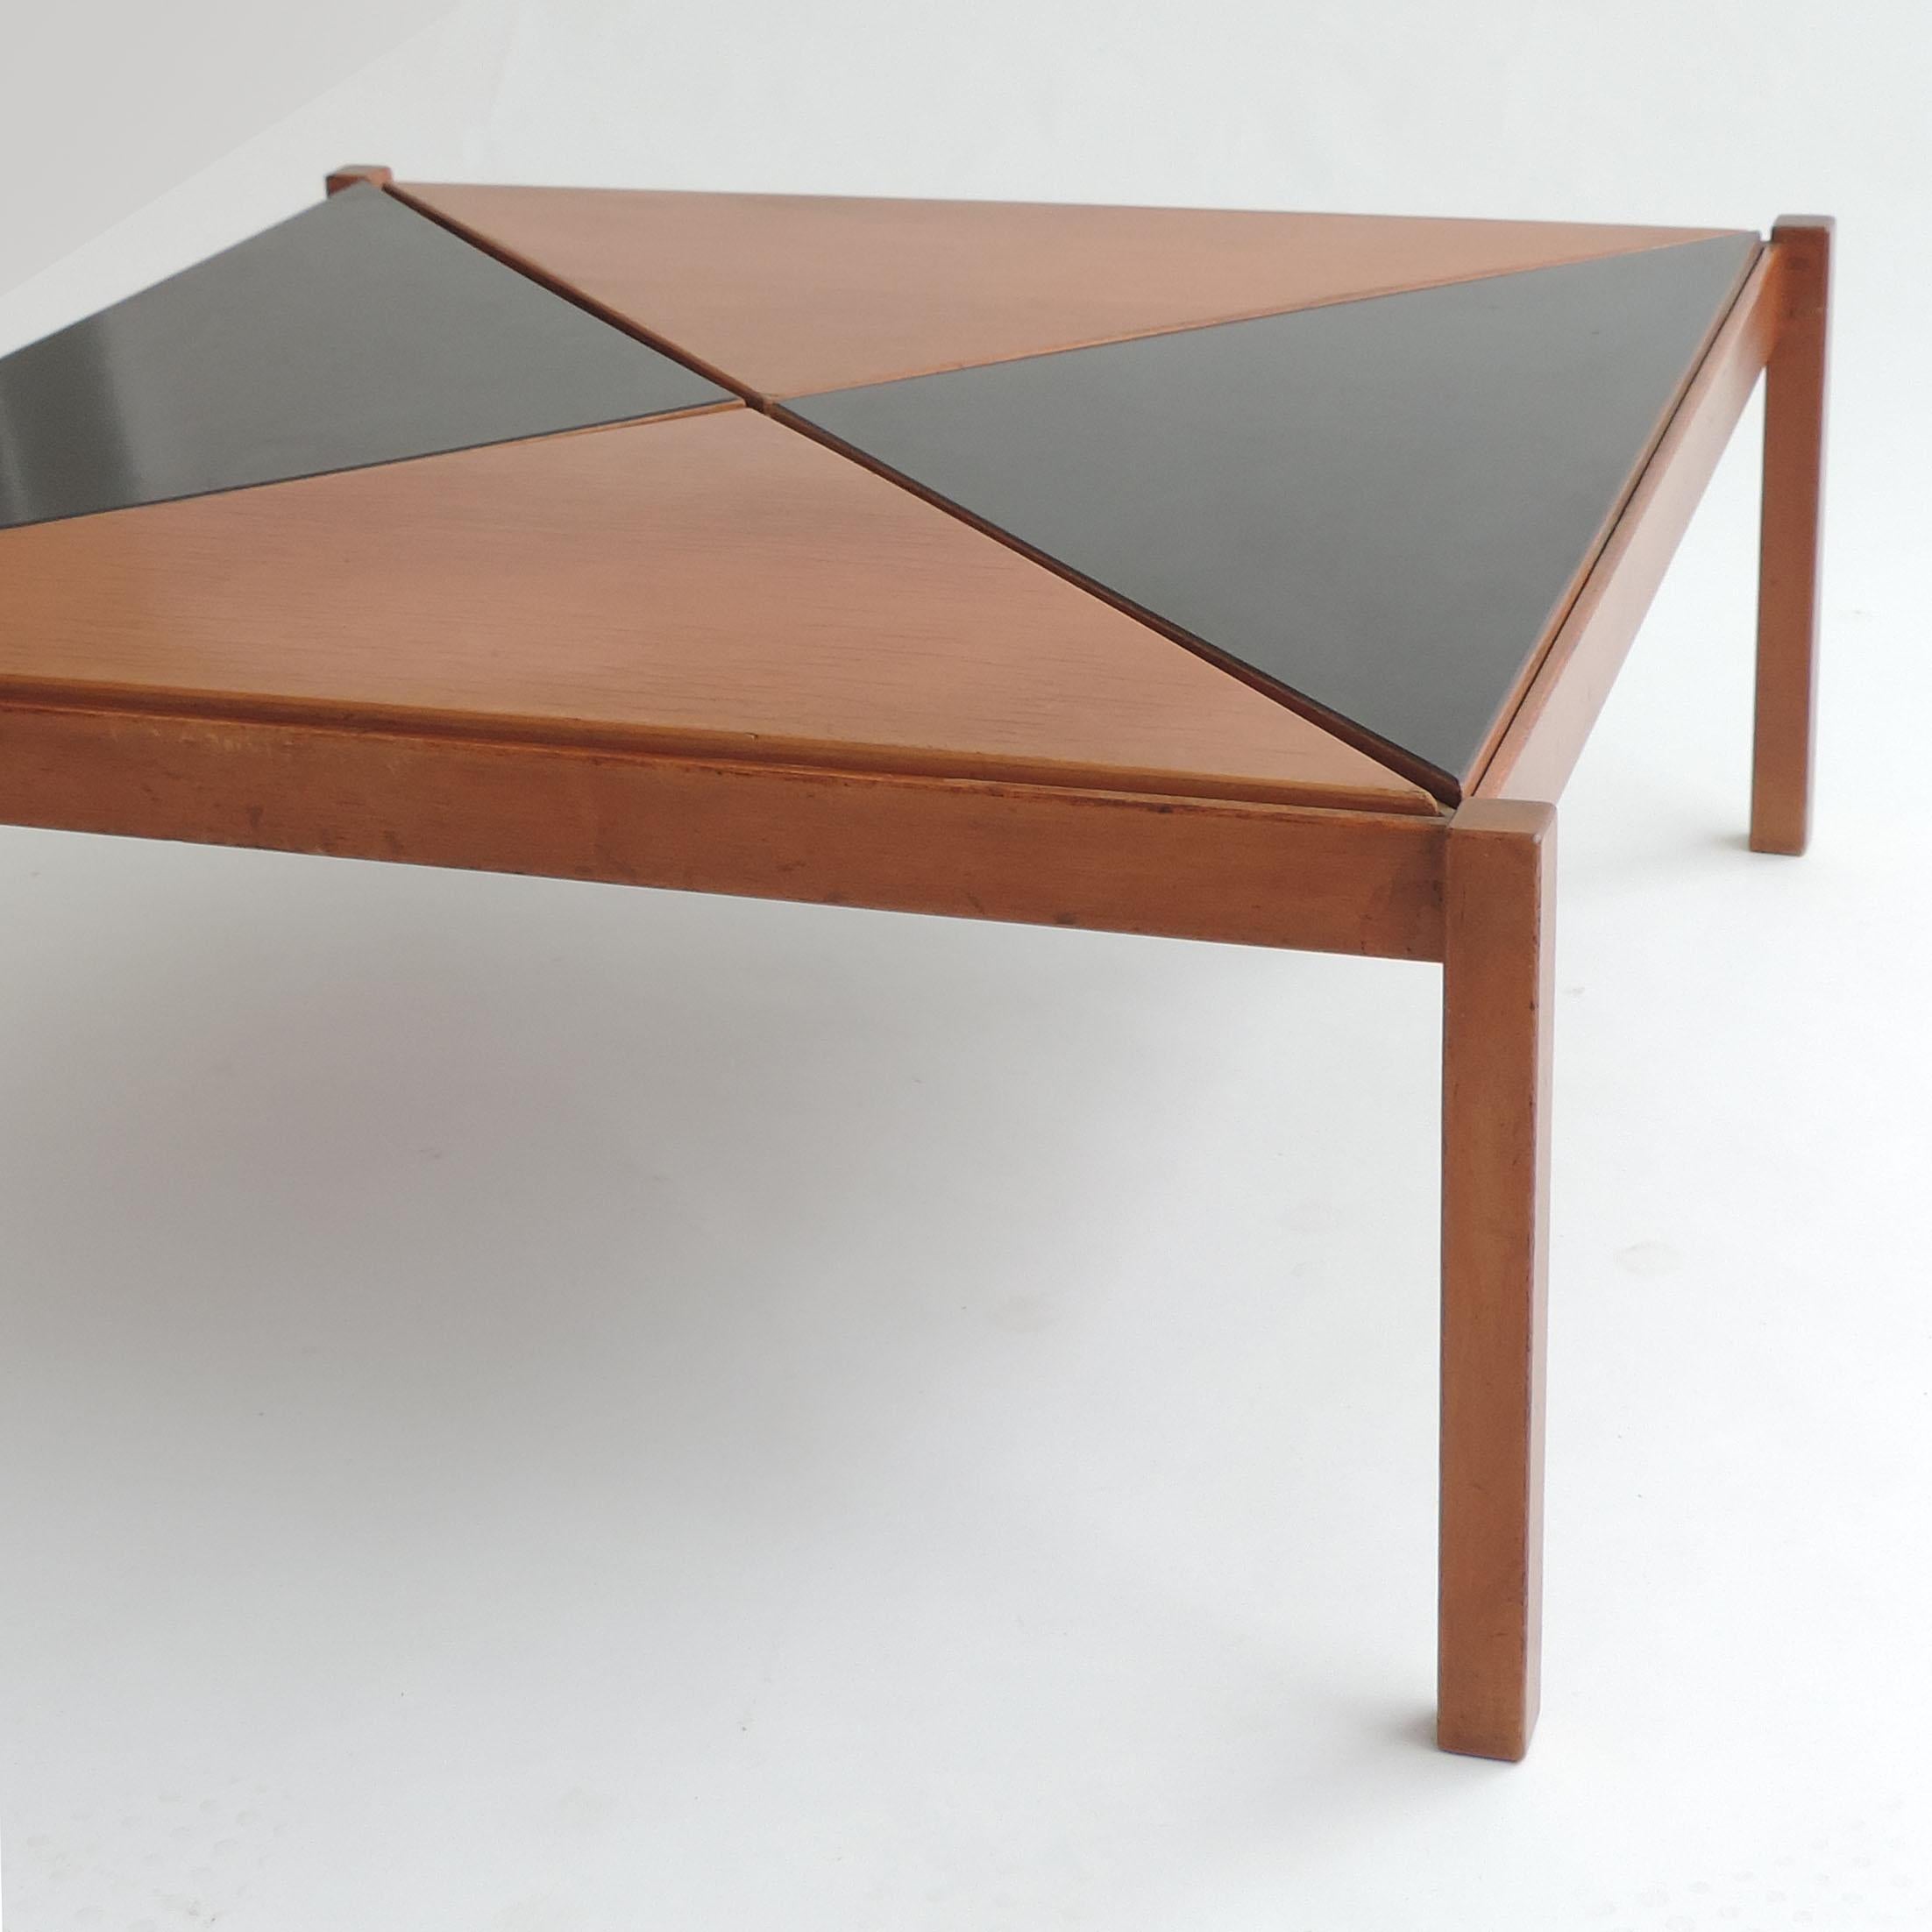 Seltener Architekt Gianfranco Frattini Couchtisch für Cantieri Carugati, Italien, 1950er Jahre
Auswechselbare Dreiecke in Holz und Schwarz, die nach Belieben verschoben werden können, um verschiedene Effekte zu erzielen.